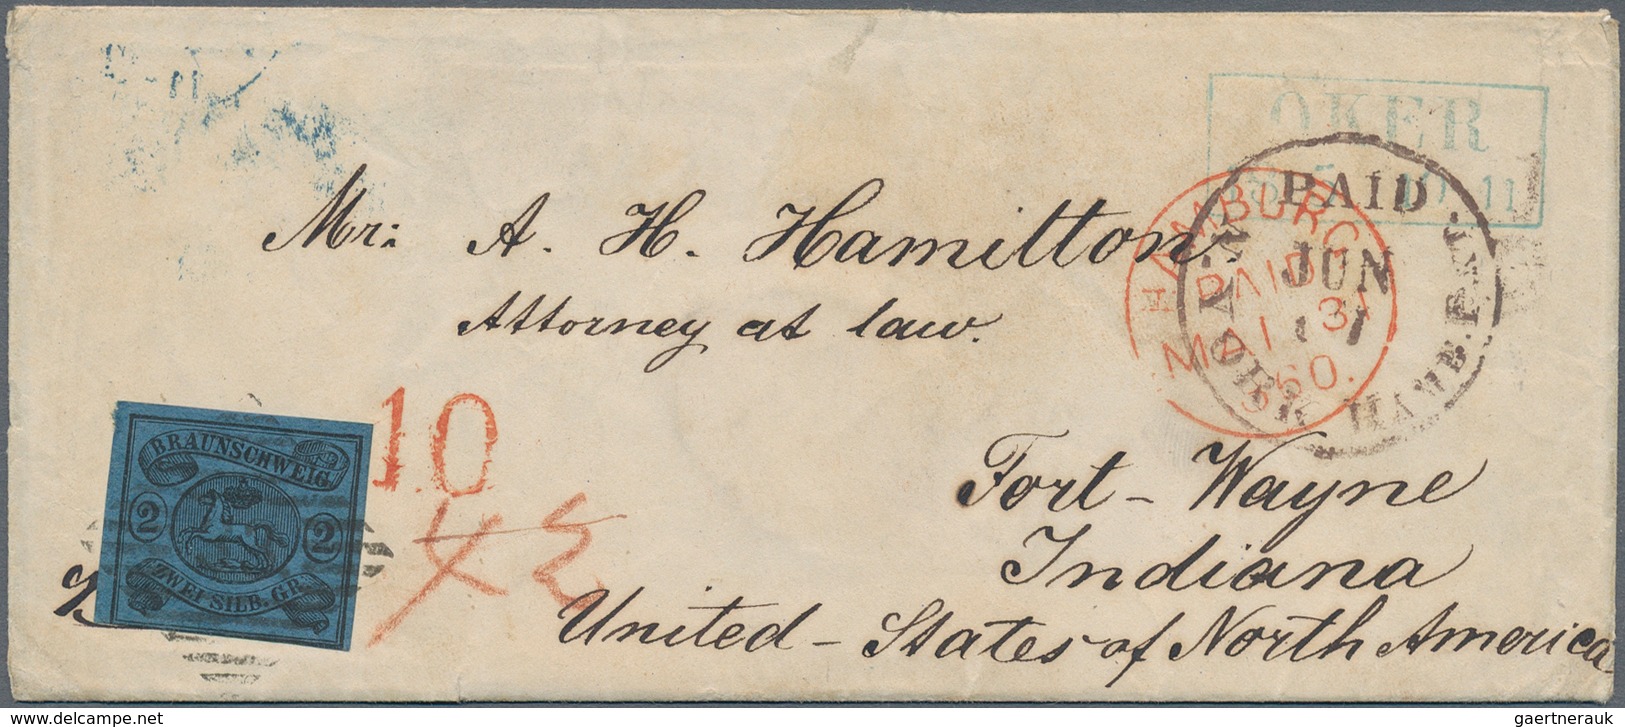 Braunschweig - Marken Und Briefe: 1860, 2 Sgr Schwarz/blau (unten Berührt) Entwertet Mit "33" OKER ( - Braunschweig